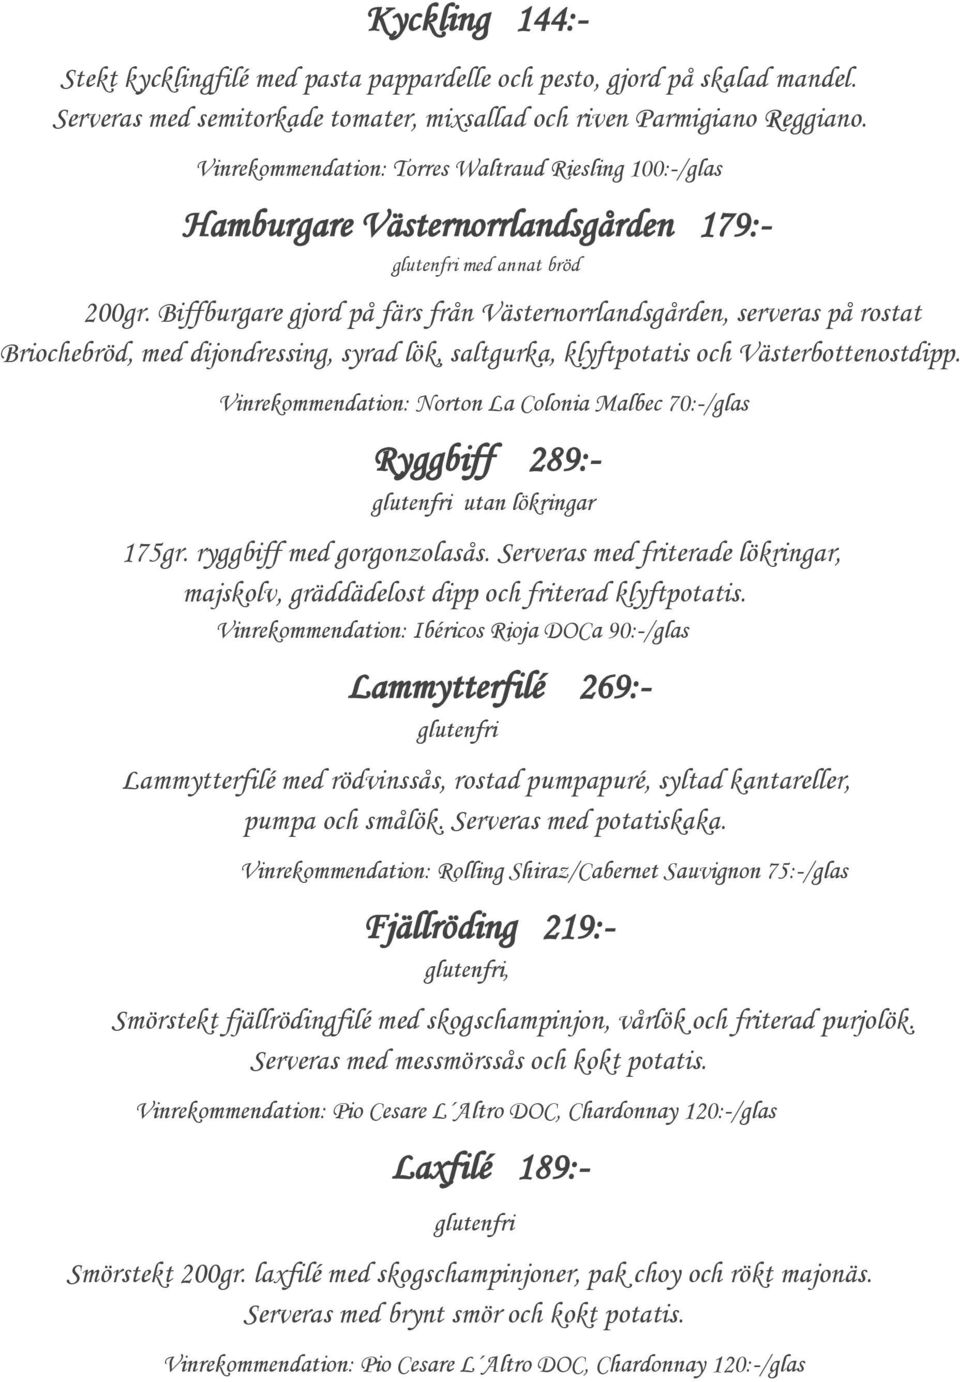 Biffburgare gjord på färs från Västernorrlandsgården, serveras på rostat Briochebröd, med dijondressing, syrad lök, saltgurka, klyftpotatis och Västerbottenostdipp.